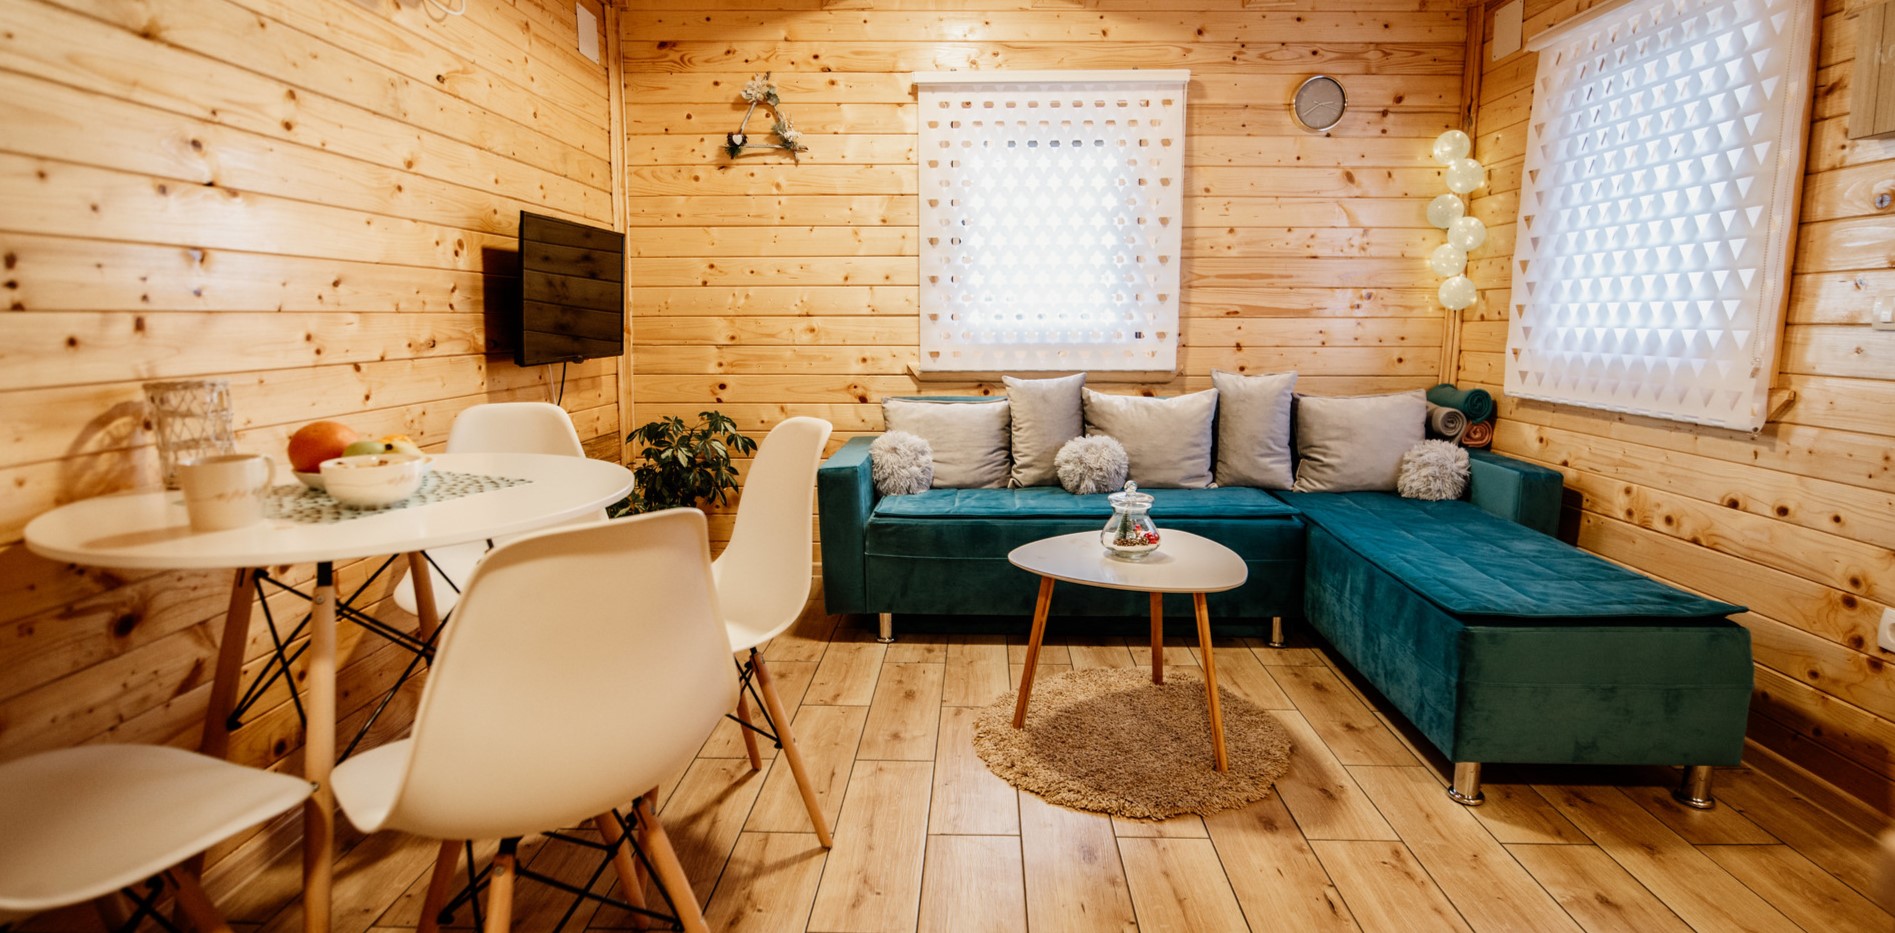 Деревянная отделка стен создает уютную атмосферу в частном доме 